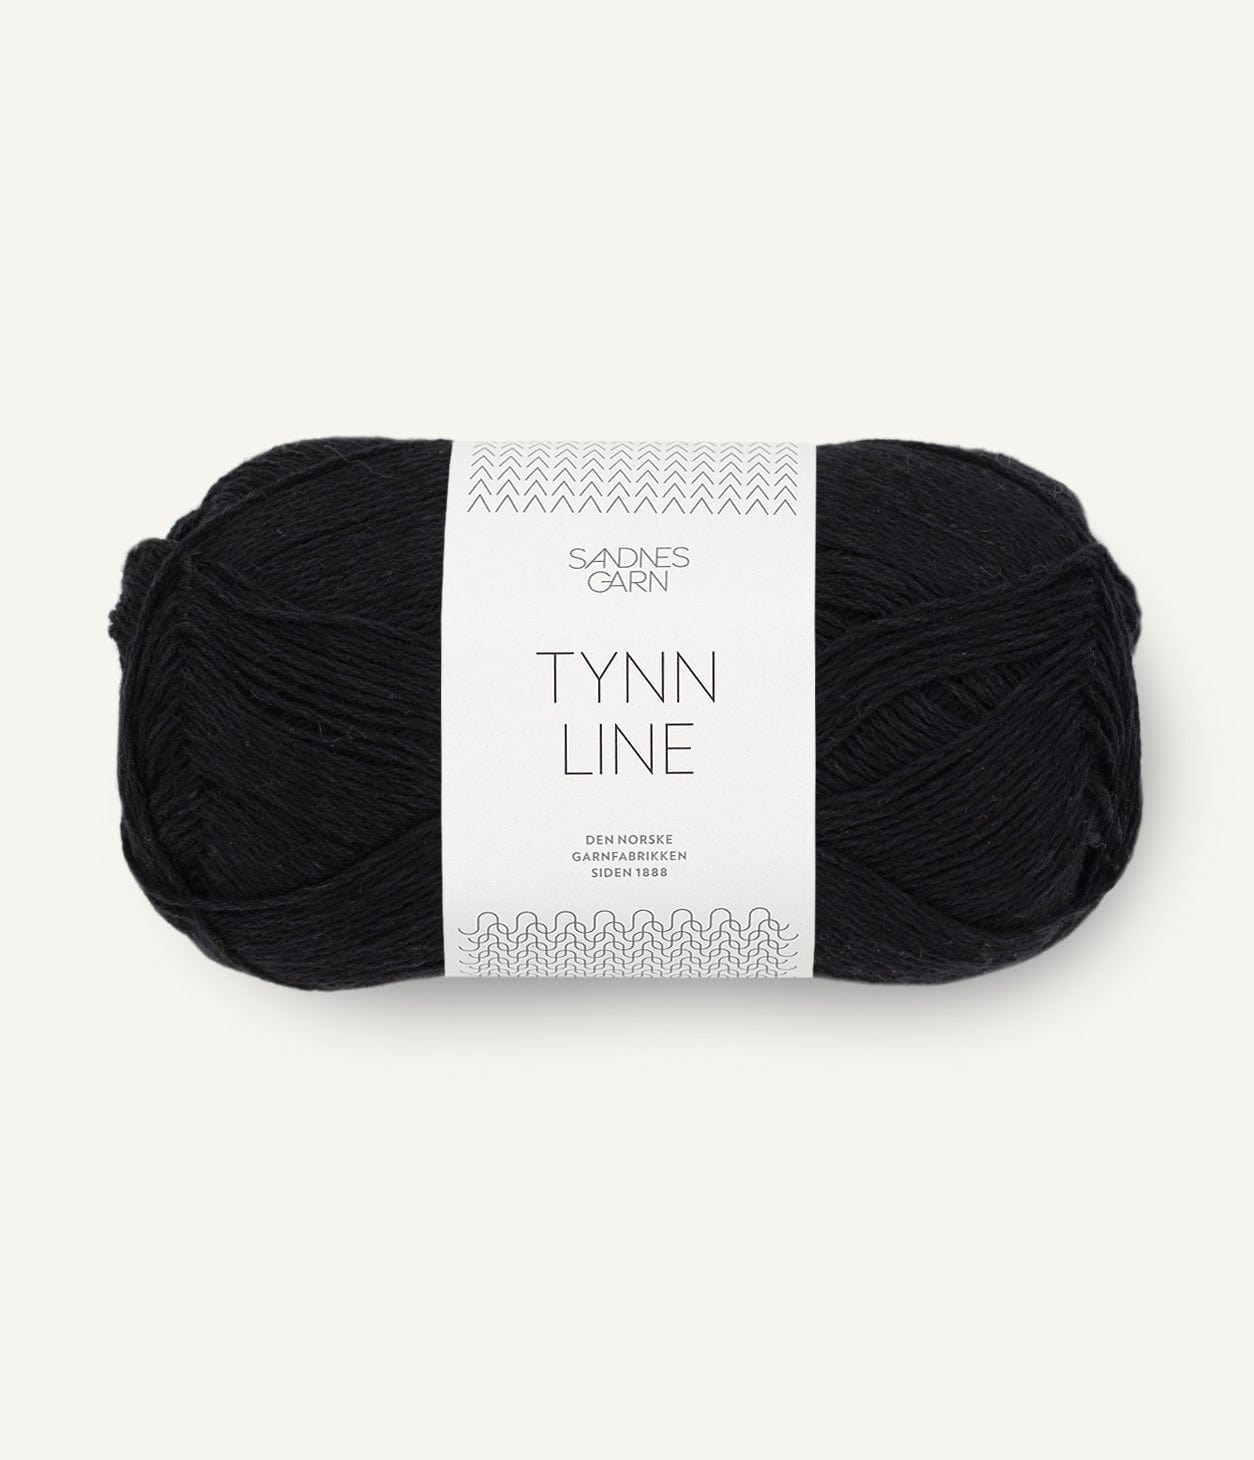 TYNN LINE von SANDNES jetzt online kaufen bei OONIQUE